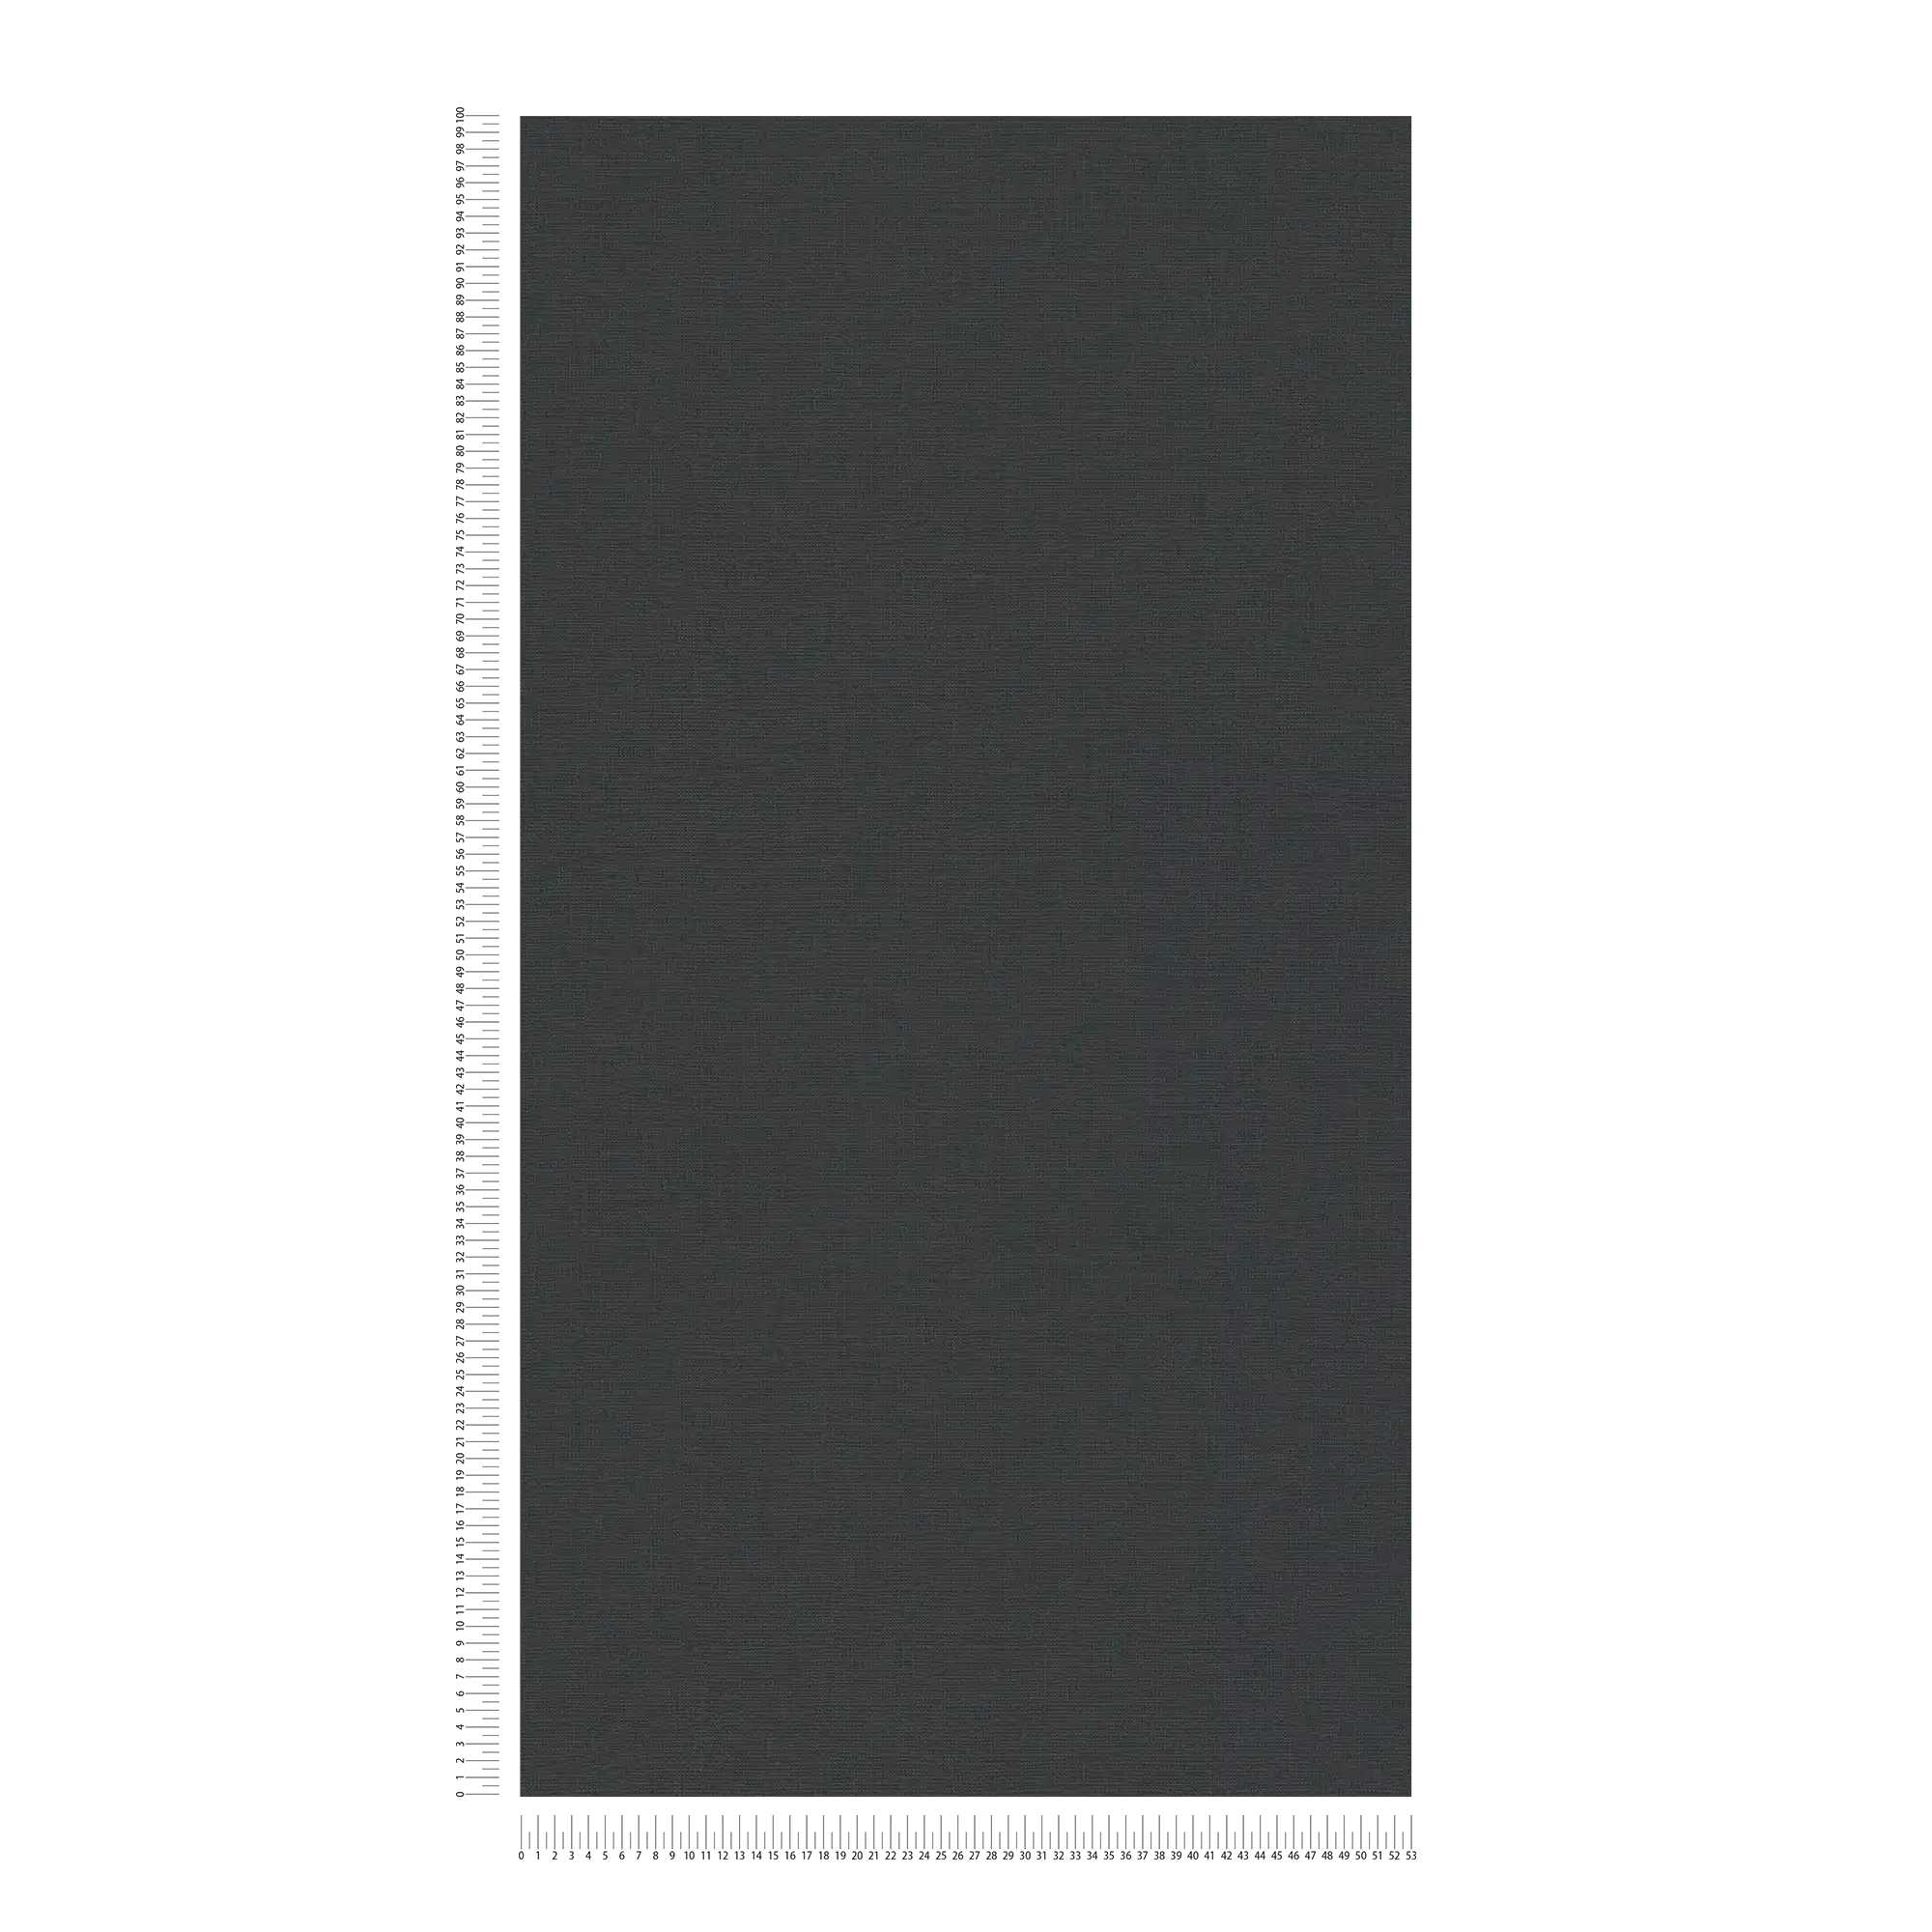             Carta da parati in tessuto non tessuto a tinta unita con struttura in lino - nero
        